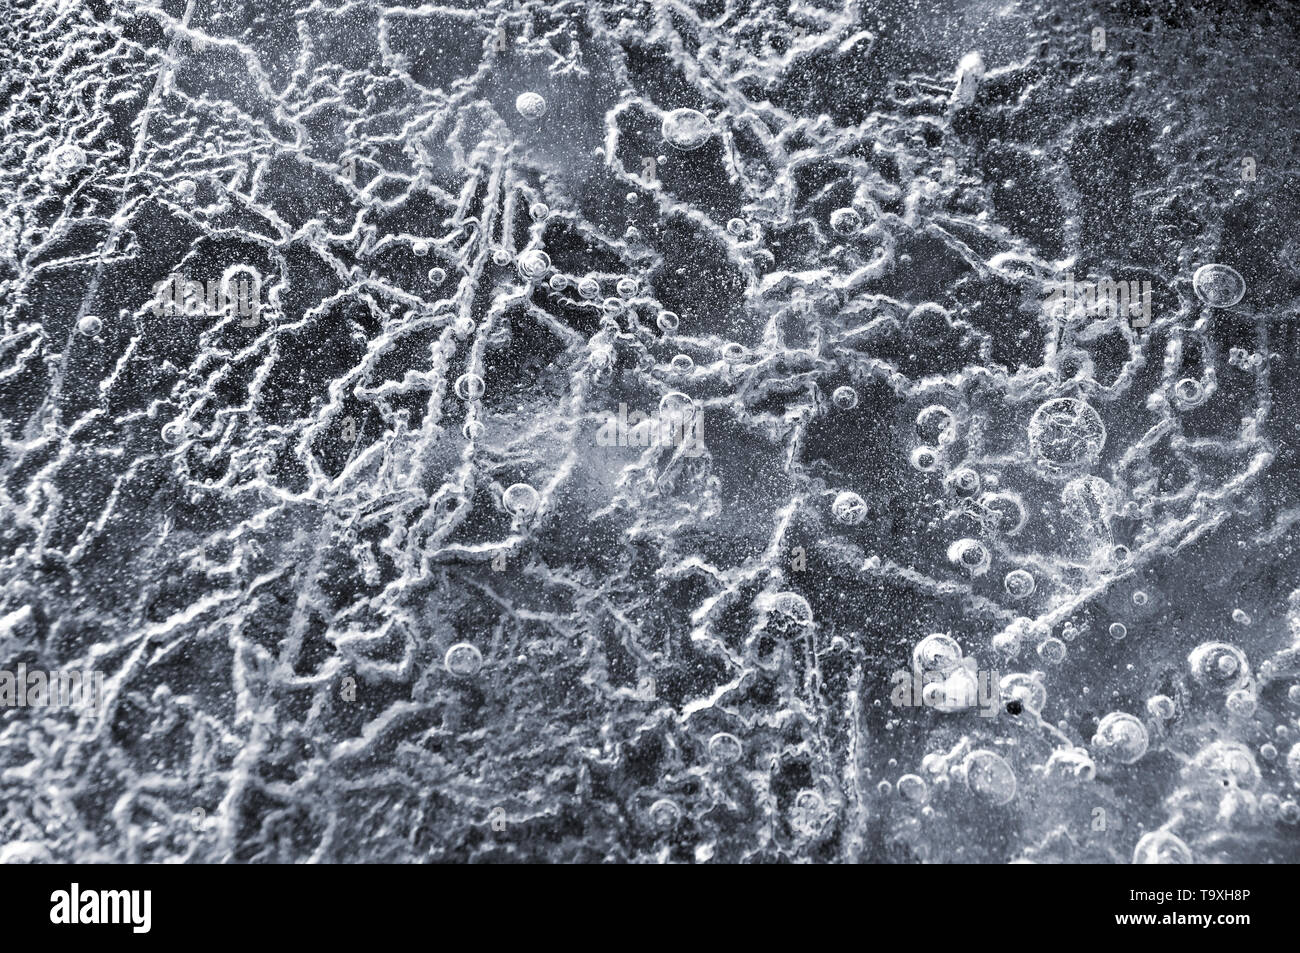 Abstract background texture libre de glace avec rainures, sillons, et des bulles d'air cought par le gel de la masse des wated tout en gelant Banque D'Images